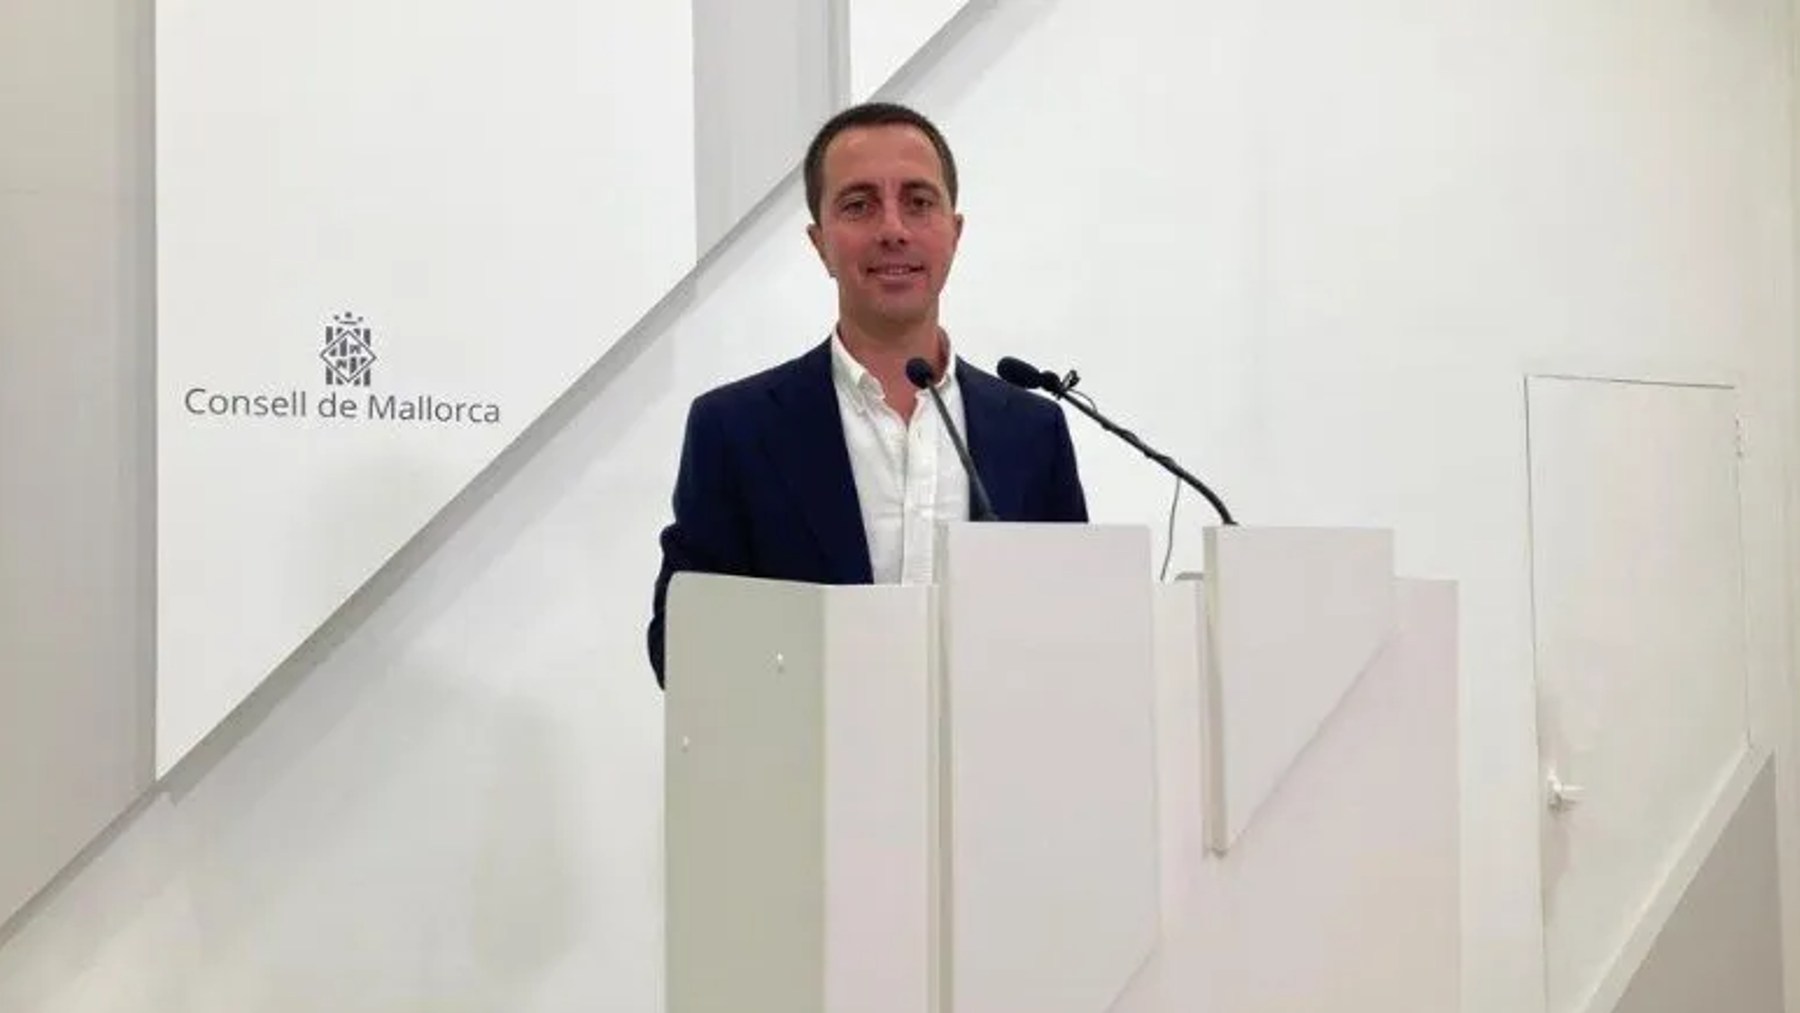 El presidente y candidato del PP al Consell de Mallorca, Llorenç Galmés.